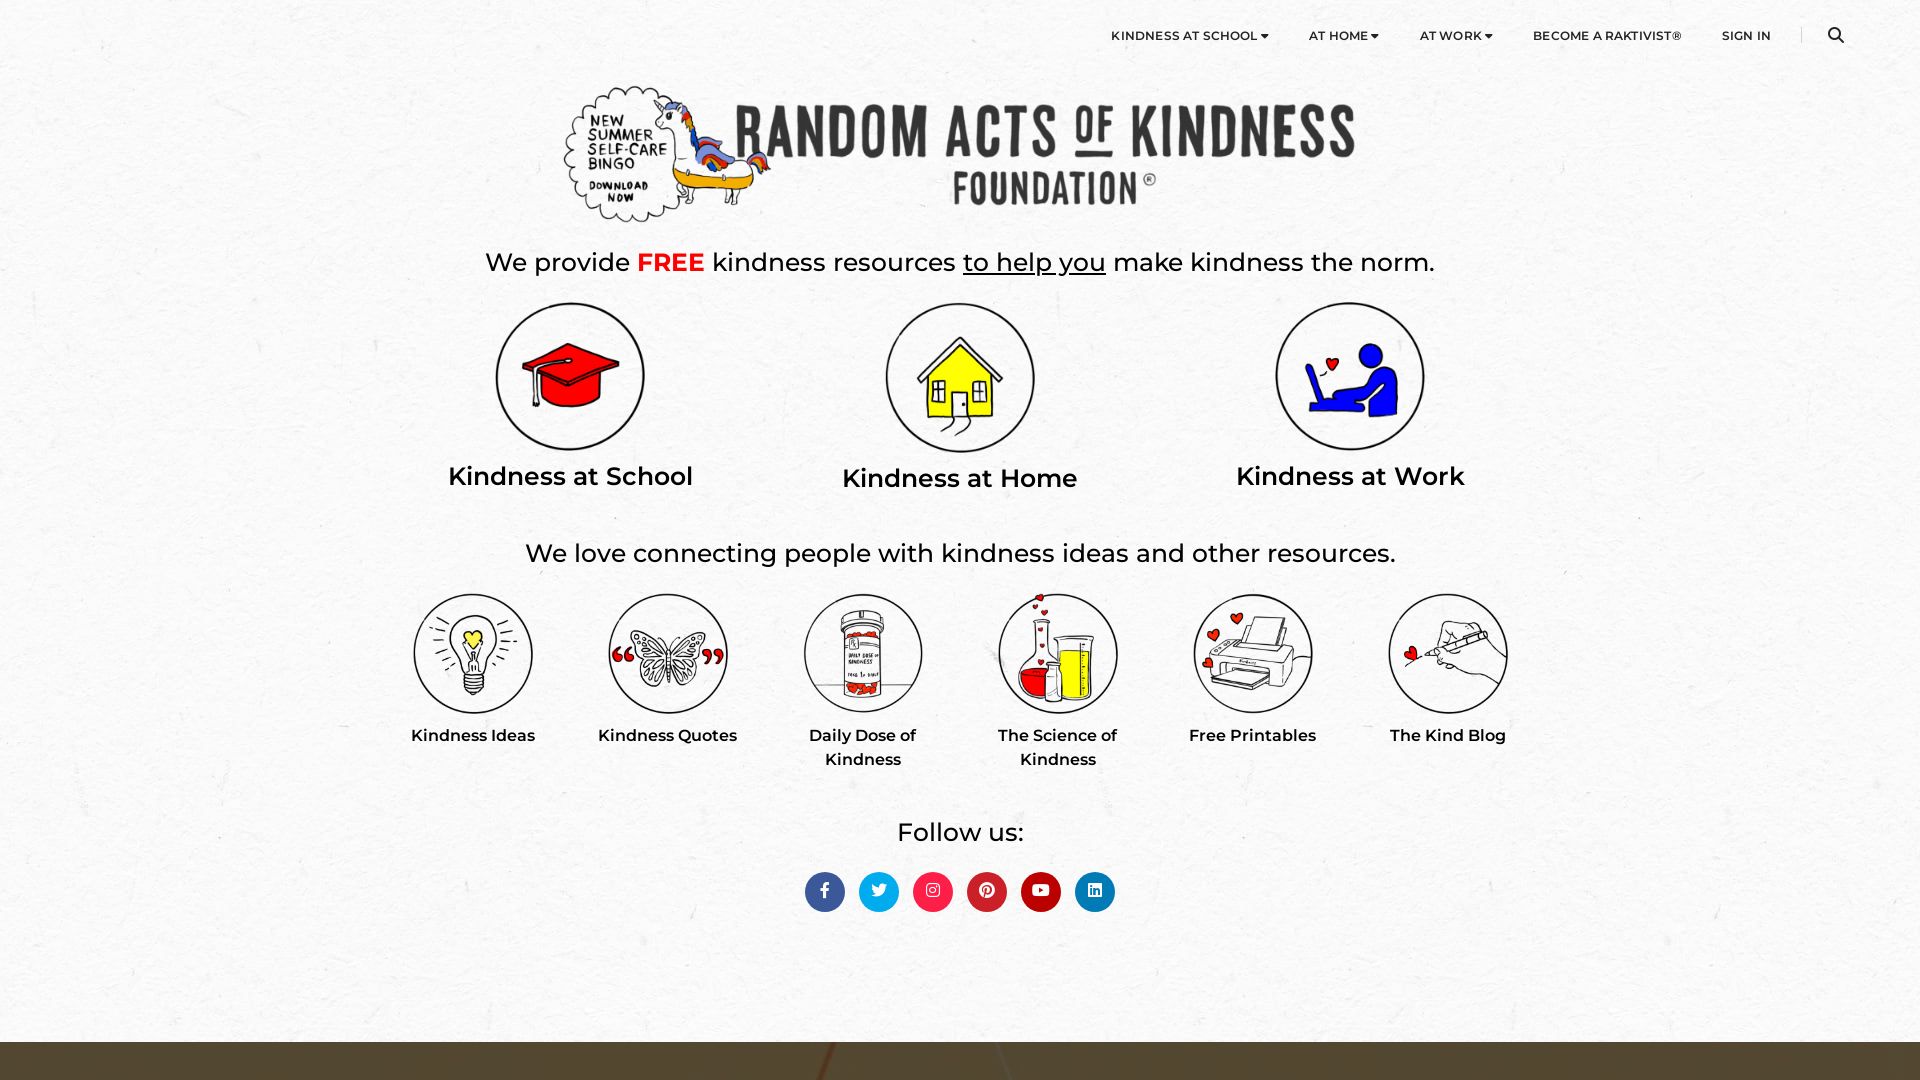 État du site web randomactsofkindness.org est   EN LIGNE